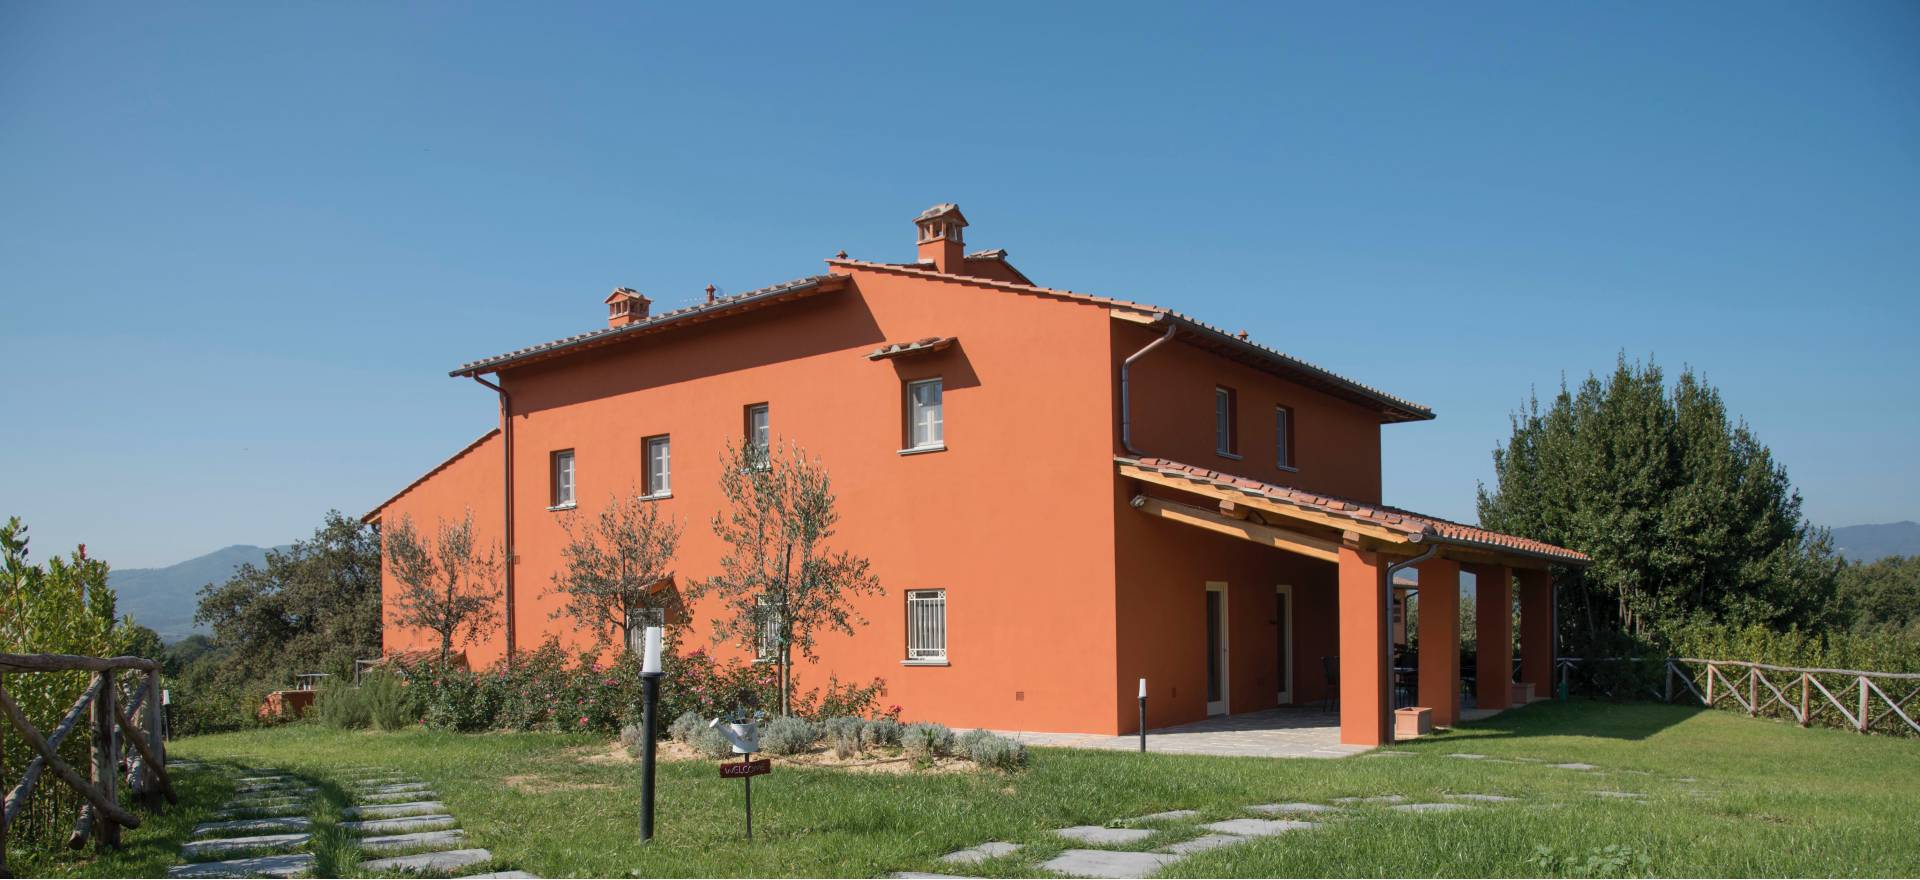 Agriturismo met design interieur in Toscane